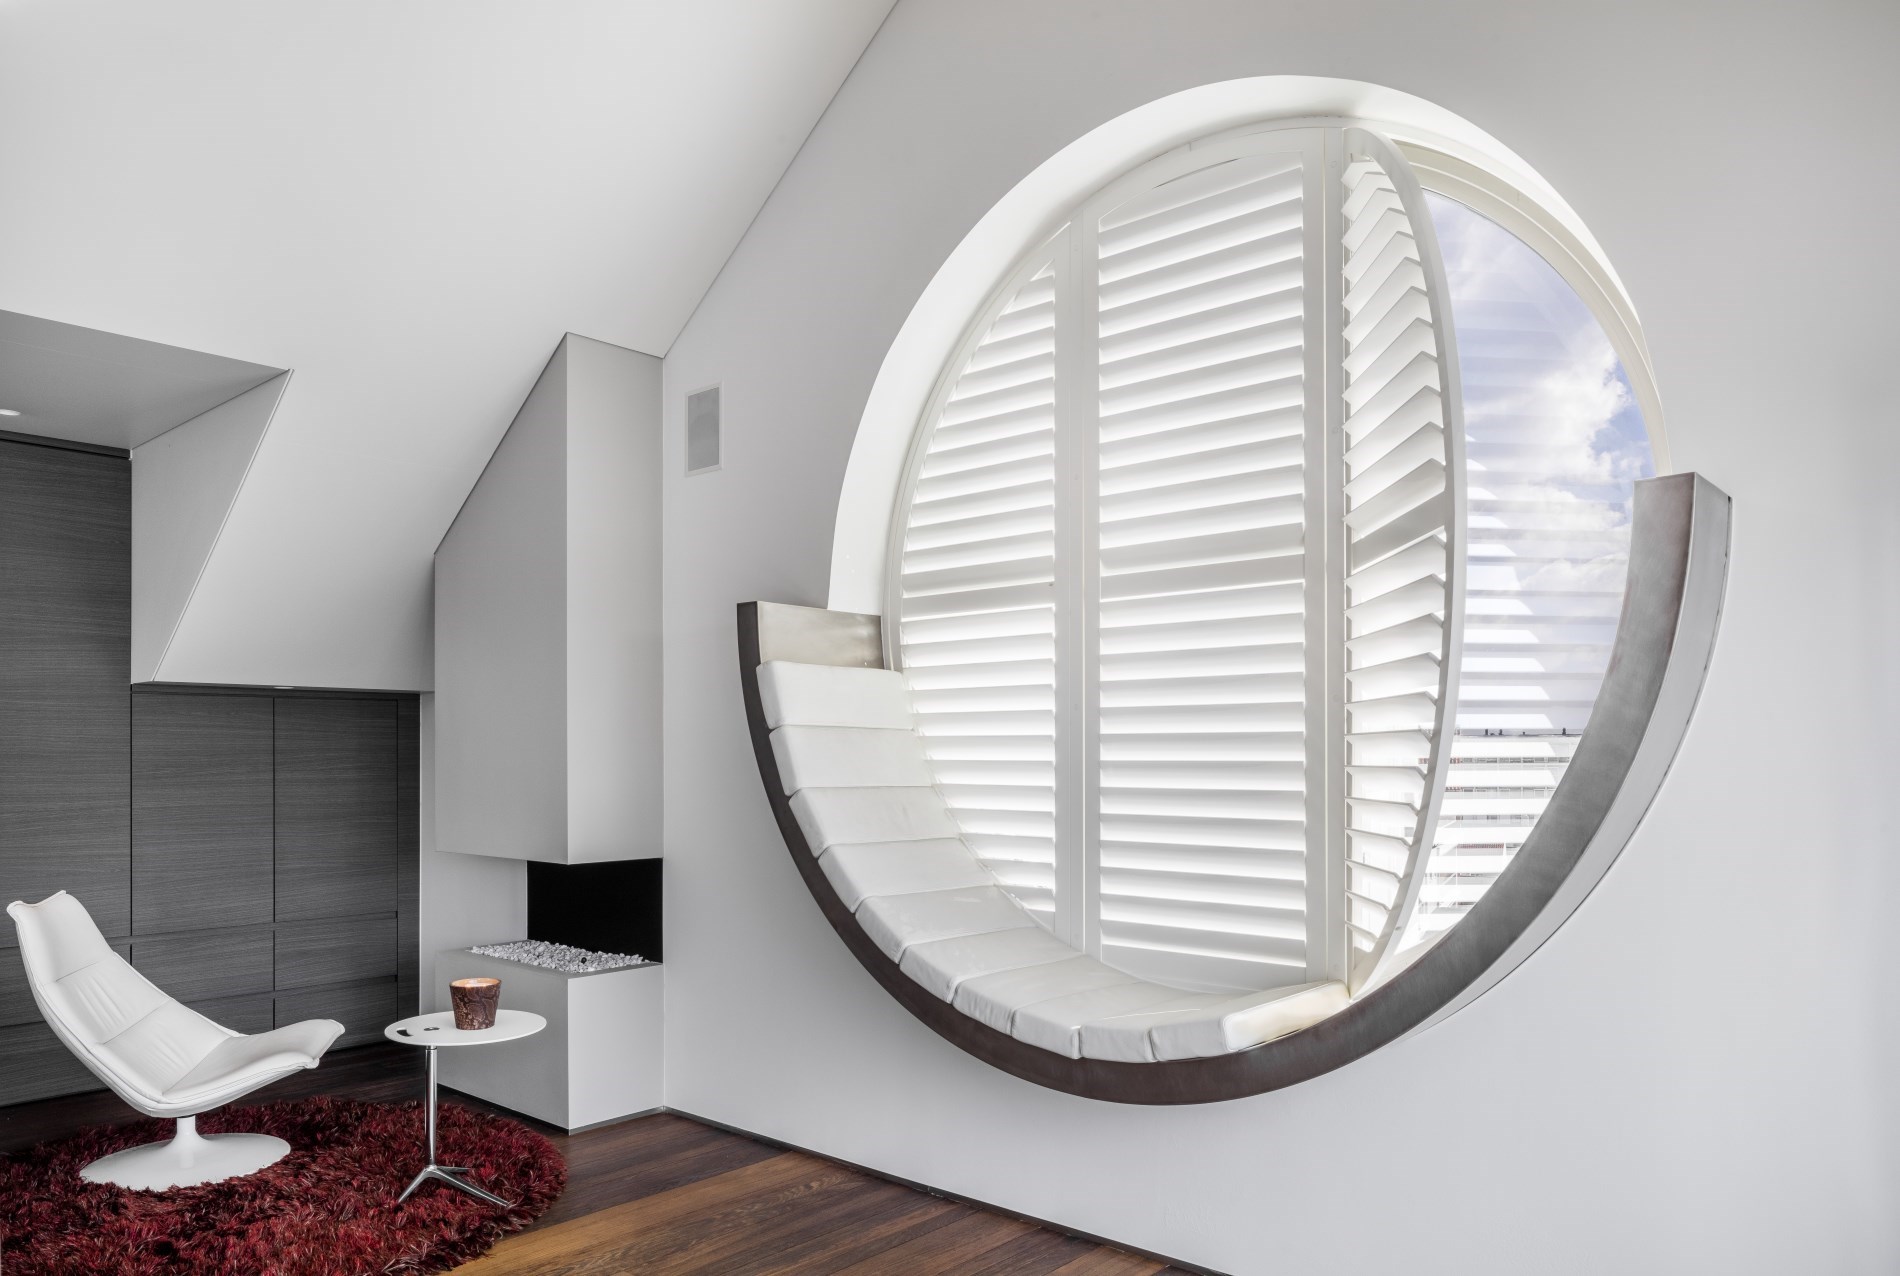 Cửa sổ tròn phù hợp cho những căn phòng có diện tích nhỏ, tạo nên cái nhìn mới lạ, hiện đại hơn hẳn so với những ô cửa sổ hình vuông hay hình chữ nhật truyền thống.